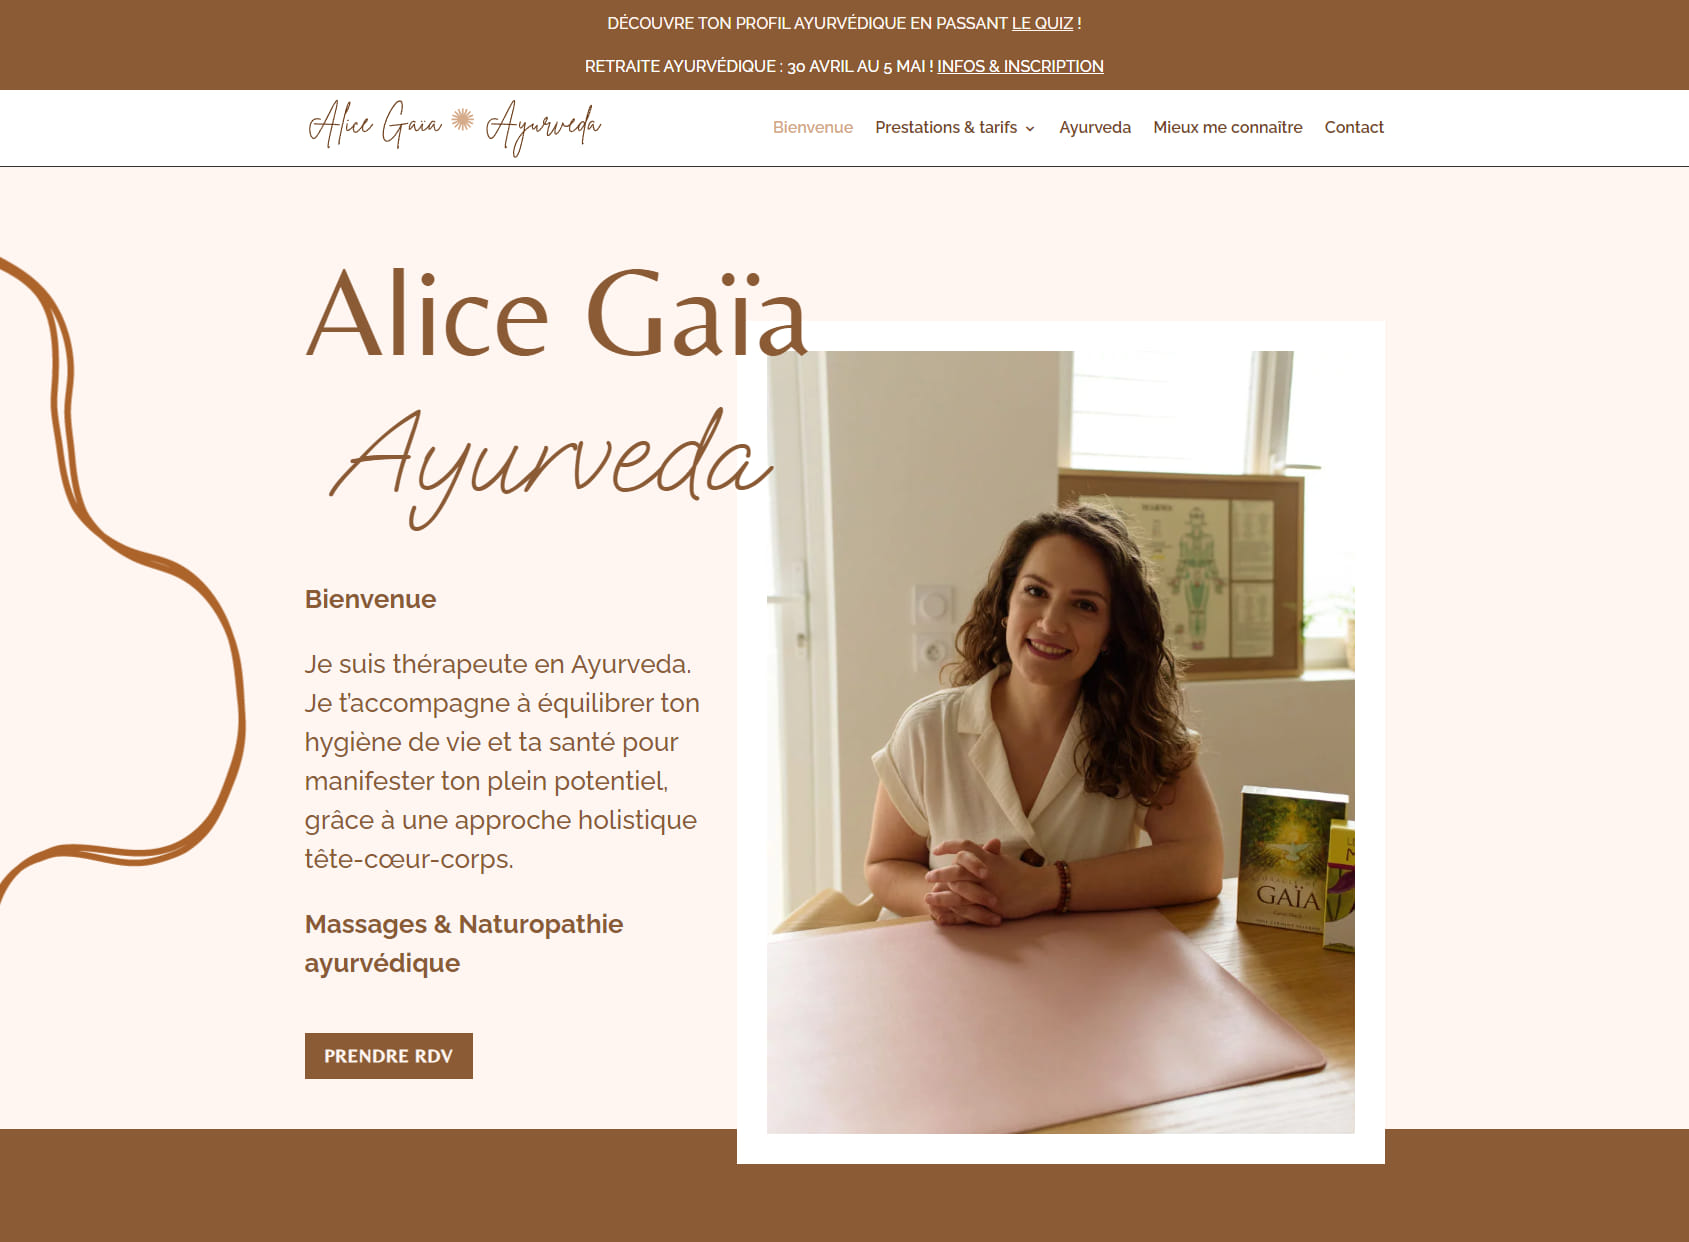 Alice Gaïa Ayurveda - Massages & Naturopathie Ayurvédique